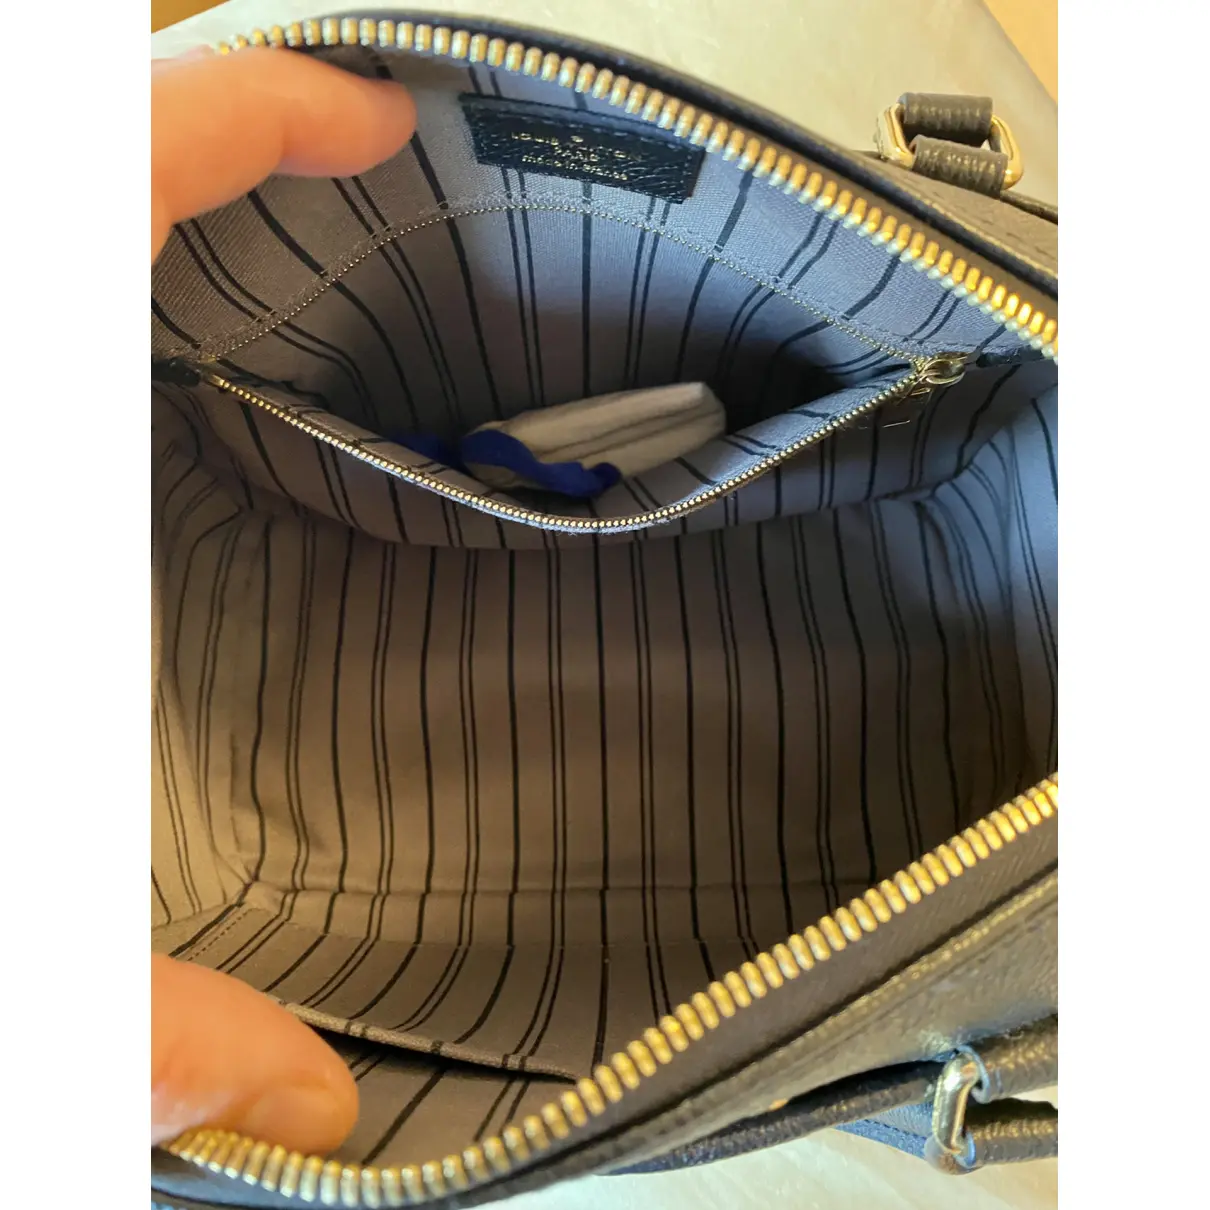 Speedy Bandoulière leather handbag Louis Vuitton